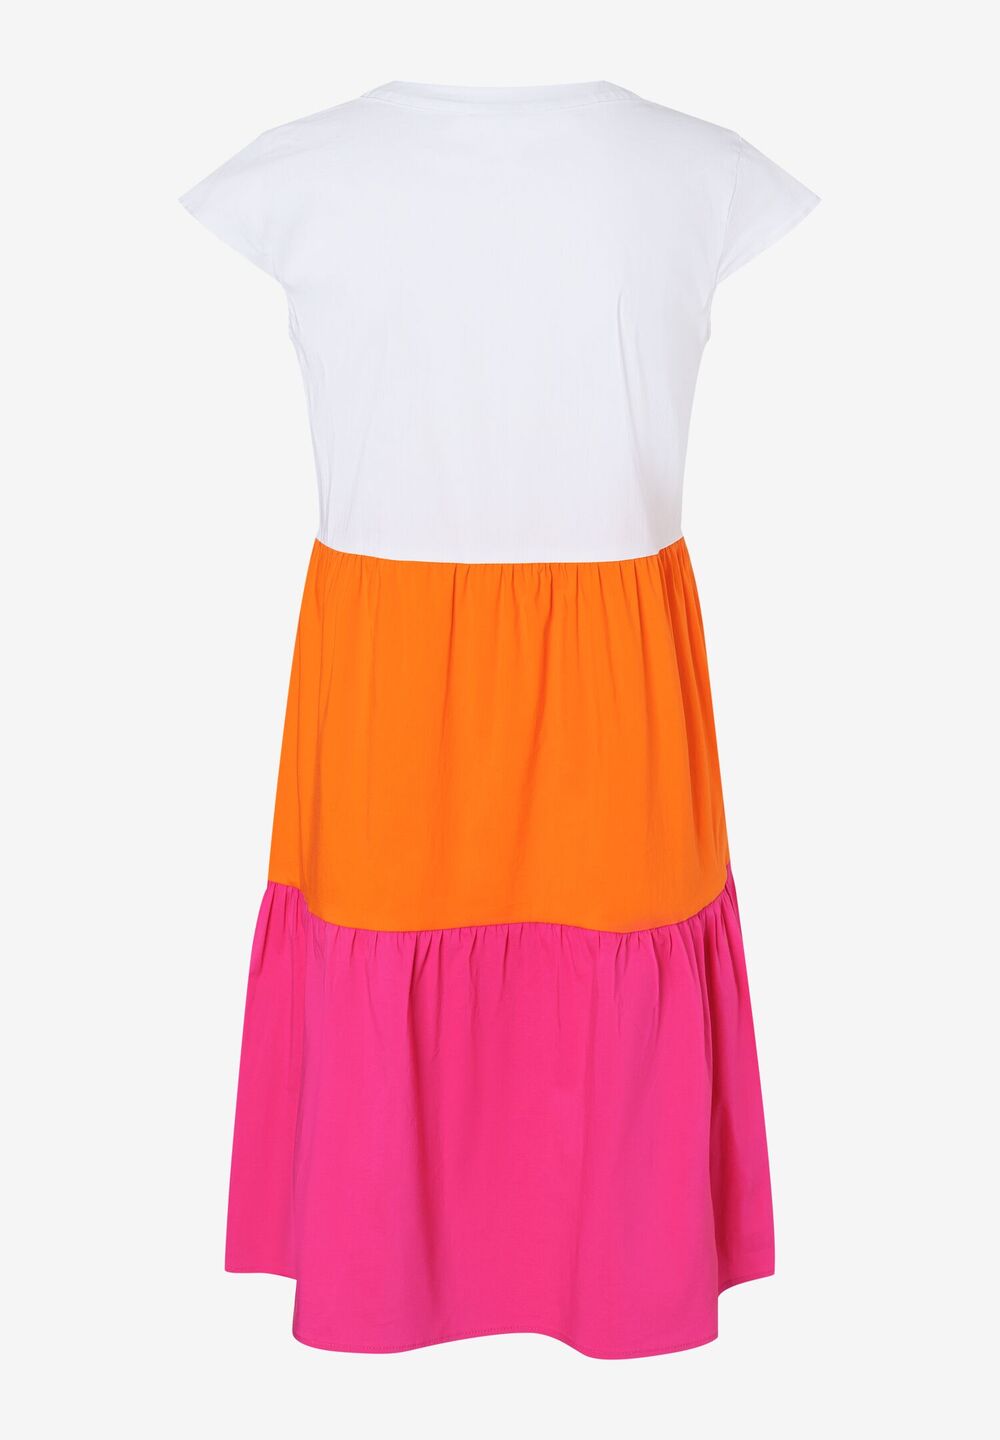 Tunikakleid, pink/orange, Sommer-Kollektion, pinkDetailansicht 2